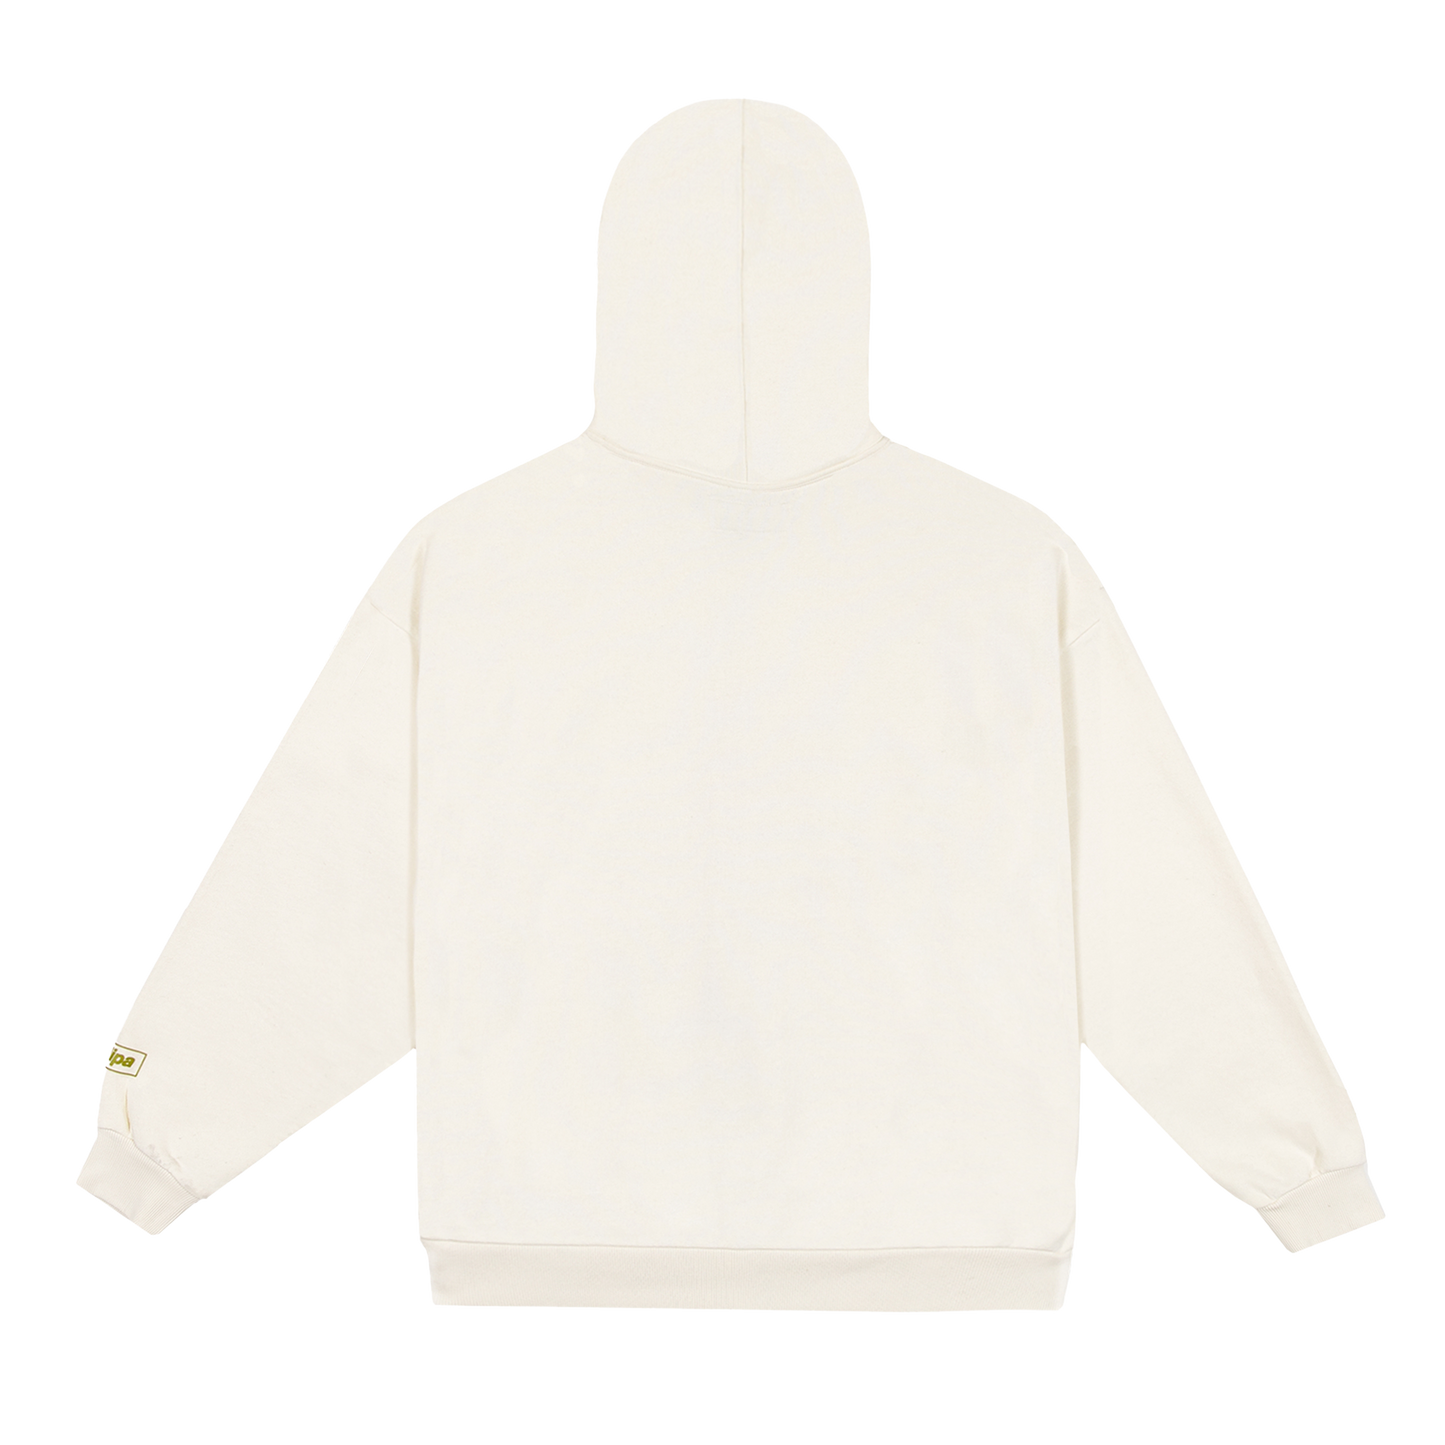 illusion cream zip hoodie